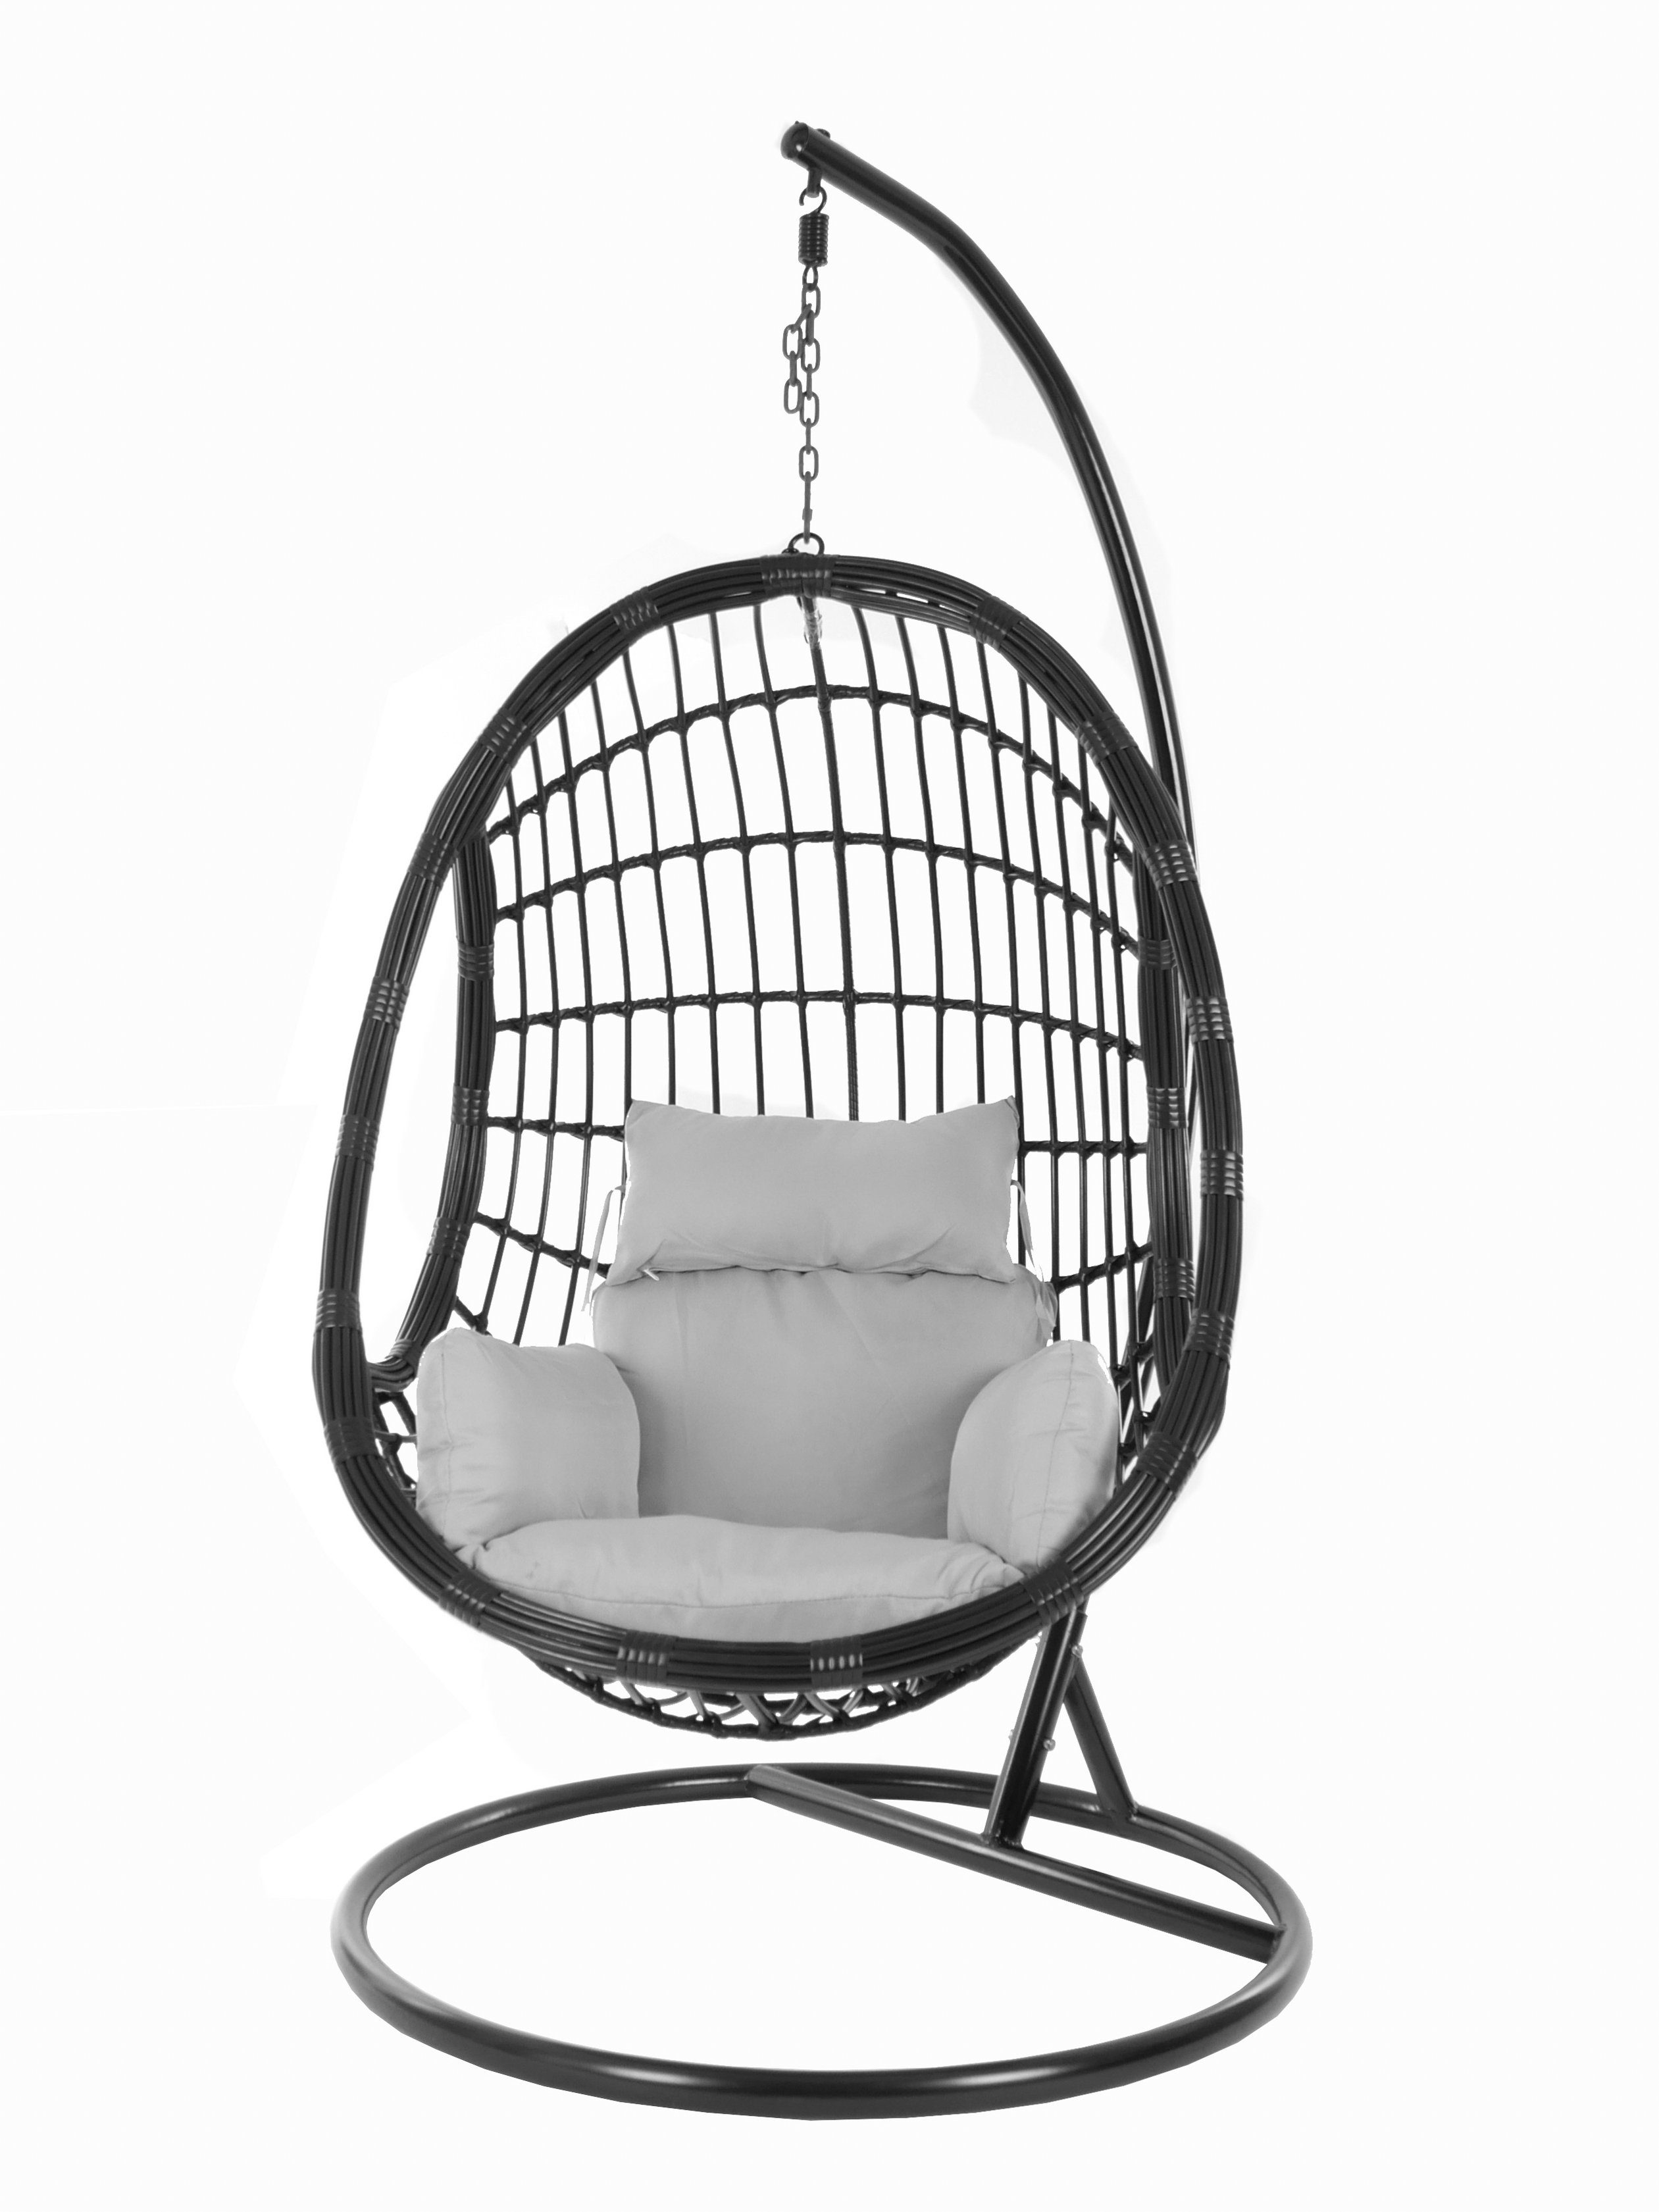 KIDEO Hängesessel und black, Kissen, Schwebesessel, mit Gestell grau PALMANOVA (8008 Nest-Kissen cloud) Hängesessel Chair, Swing